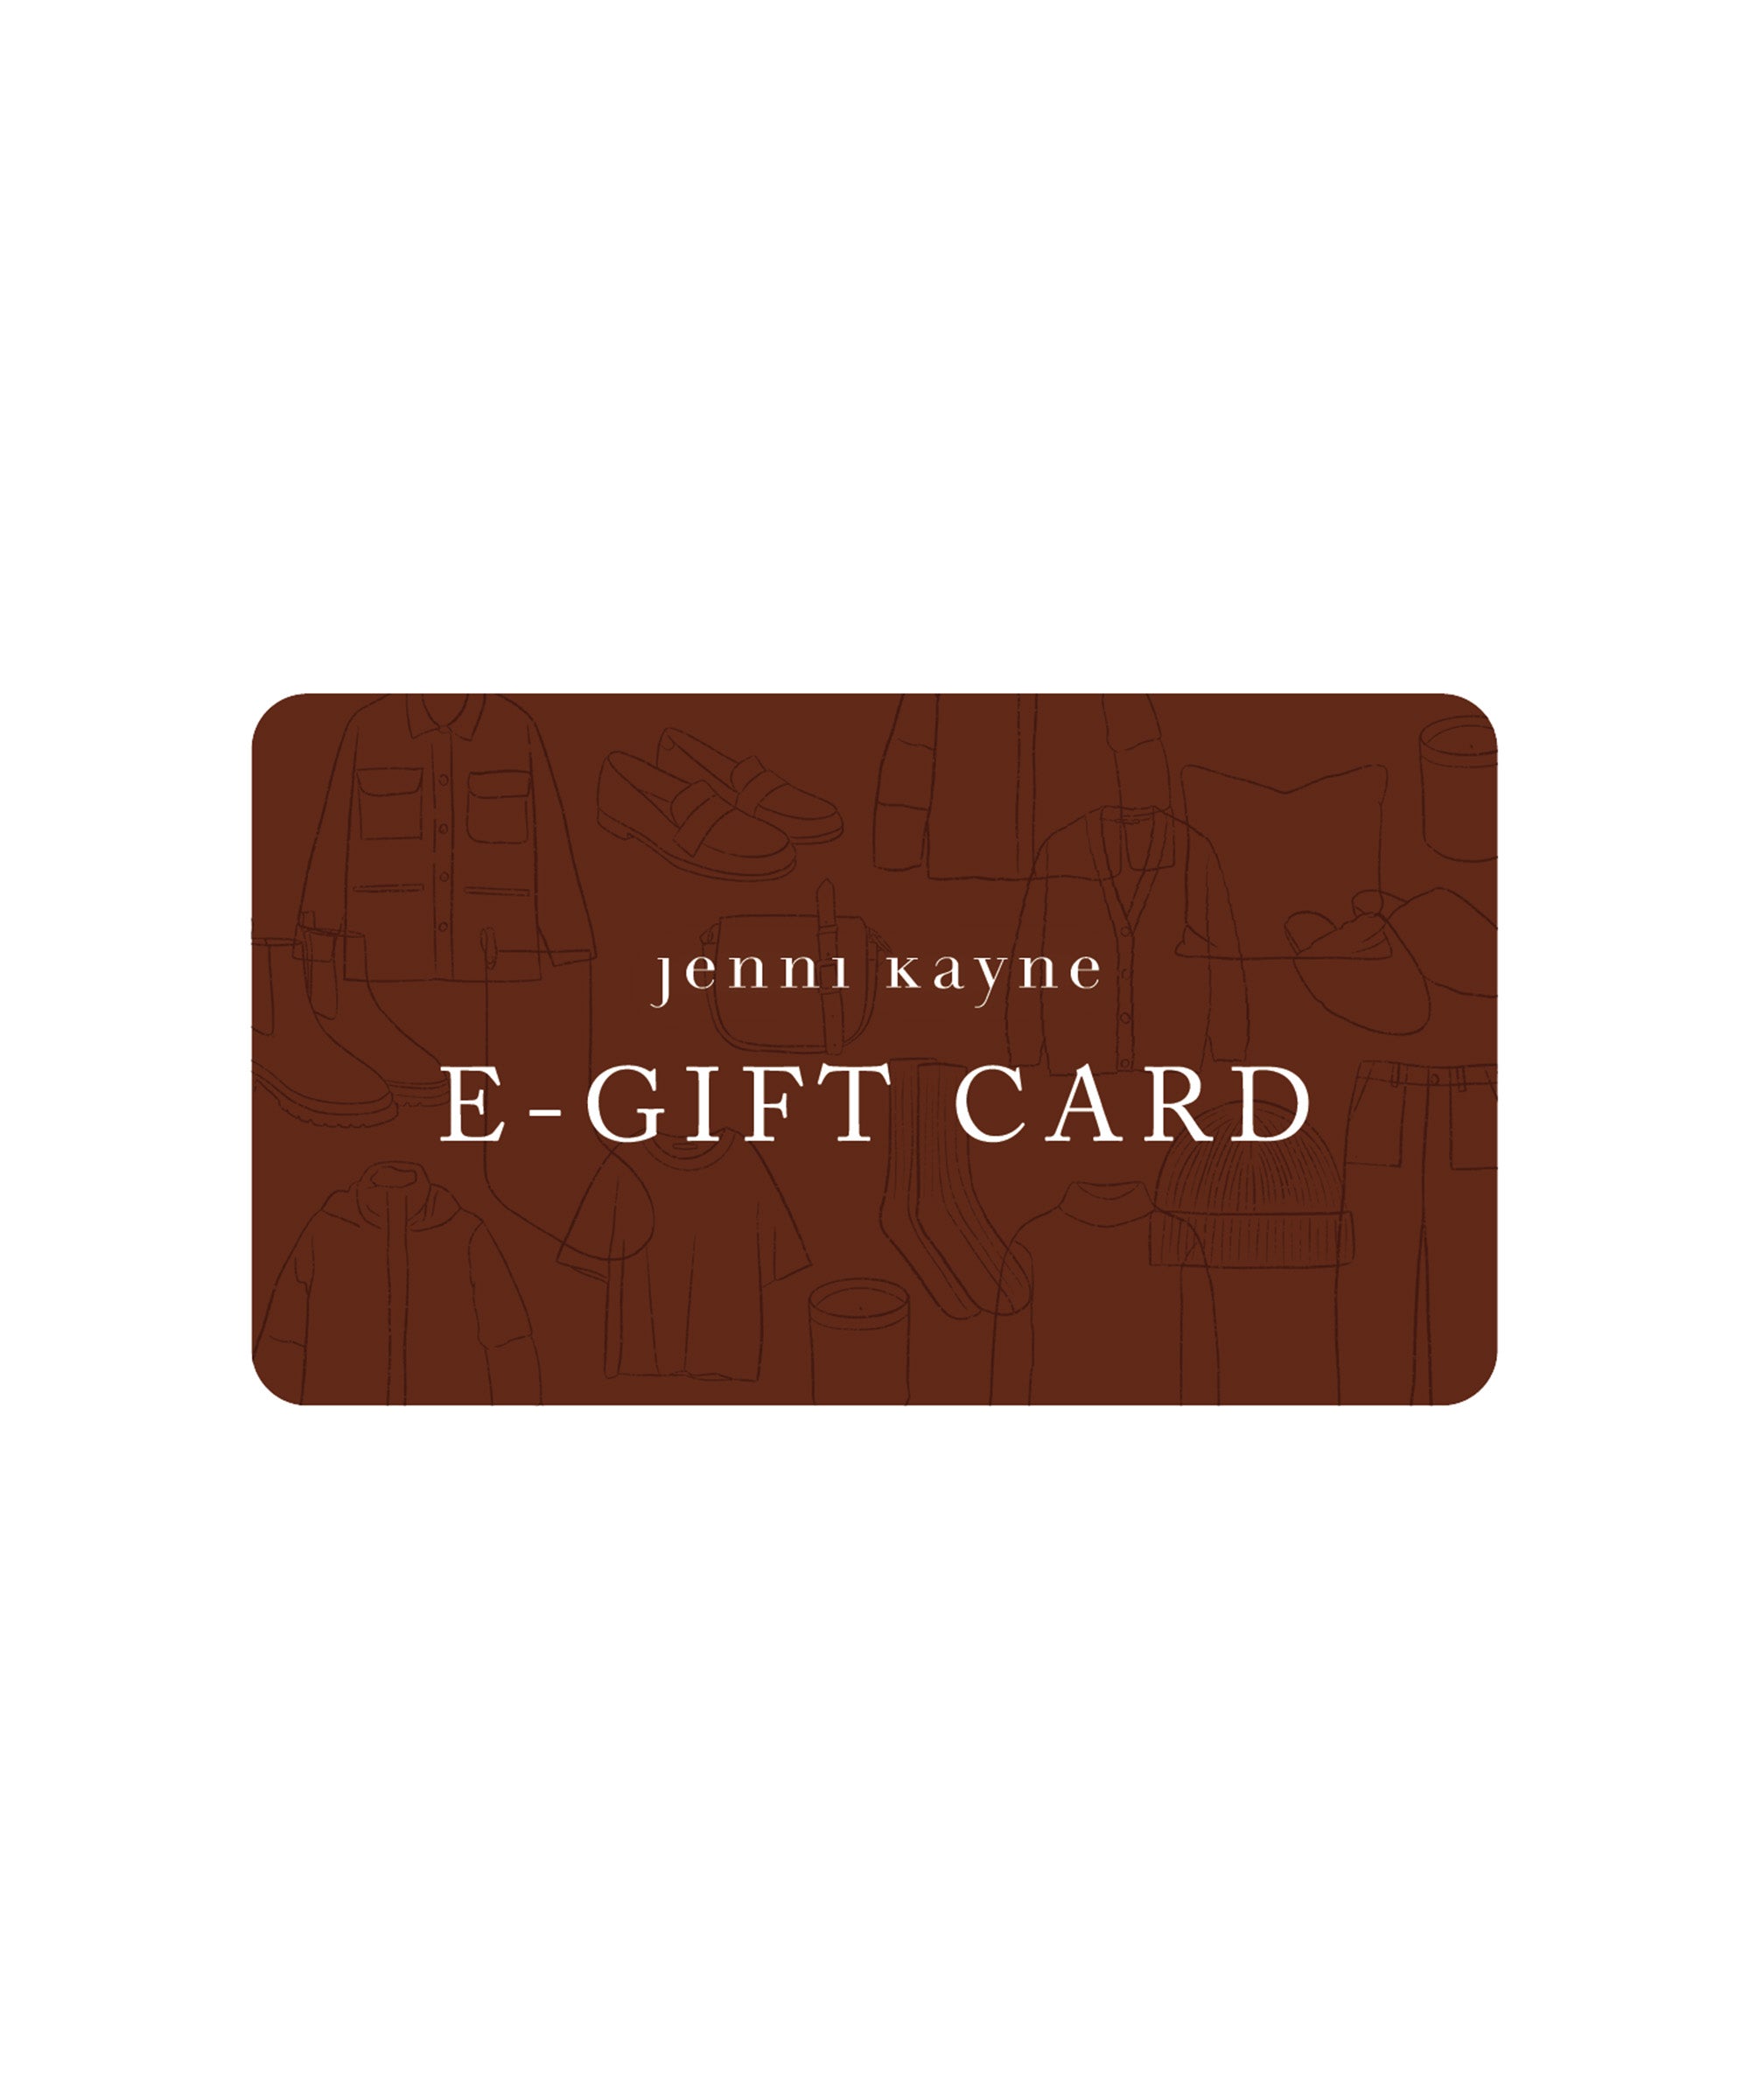 E Gift Card – Jenni Kayne